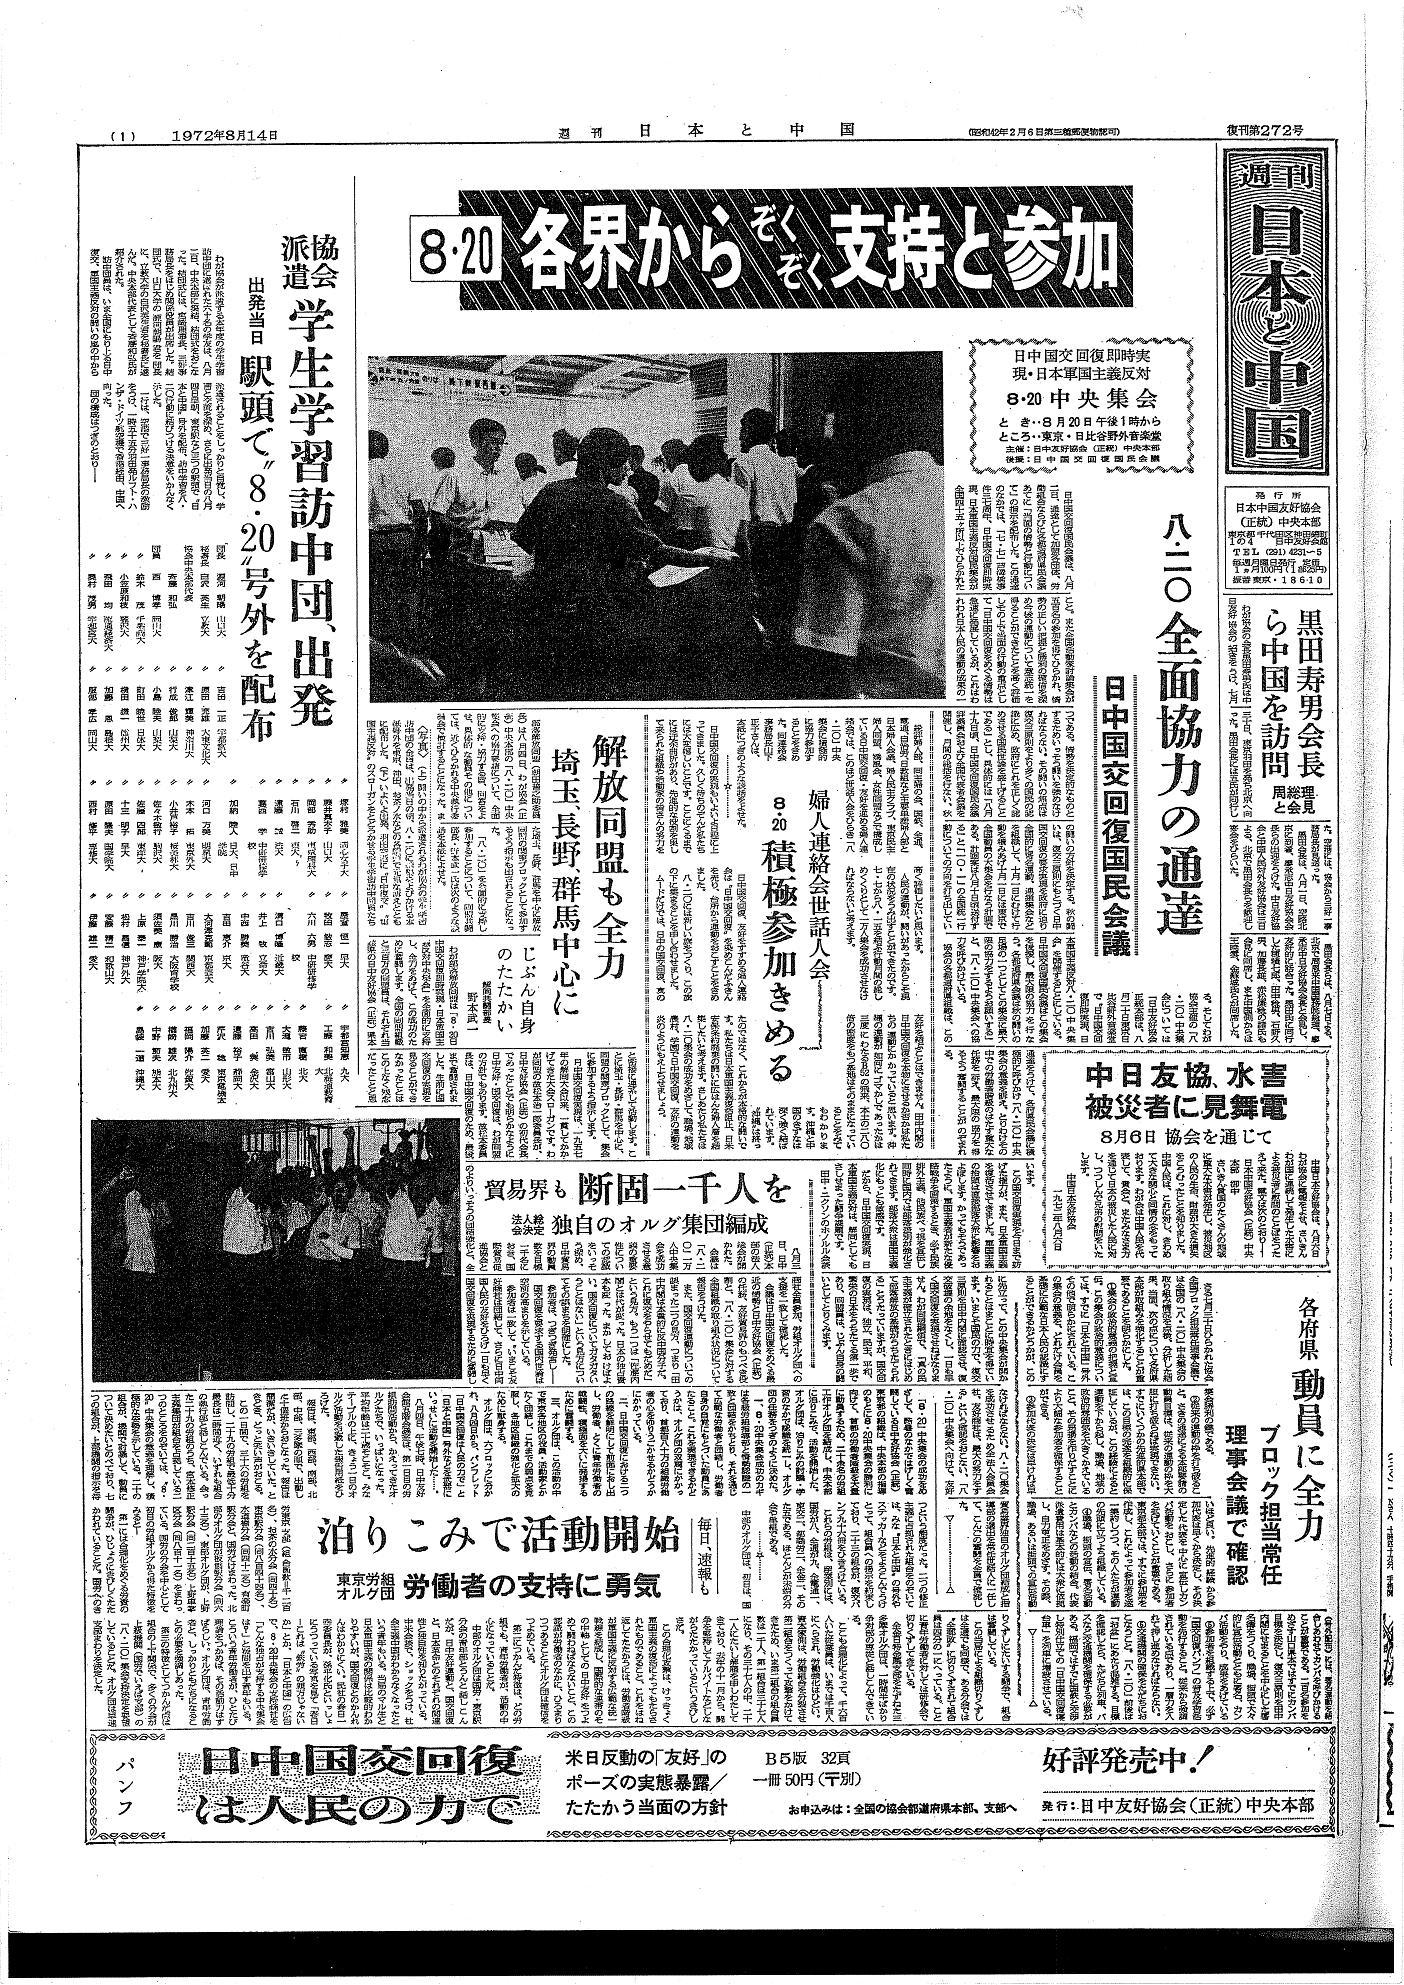 極左集団「日共左派・毛沢東派」元幹部が小沢さんを検察審査会にチクッた。